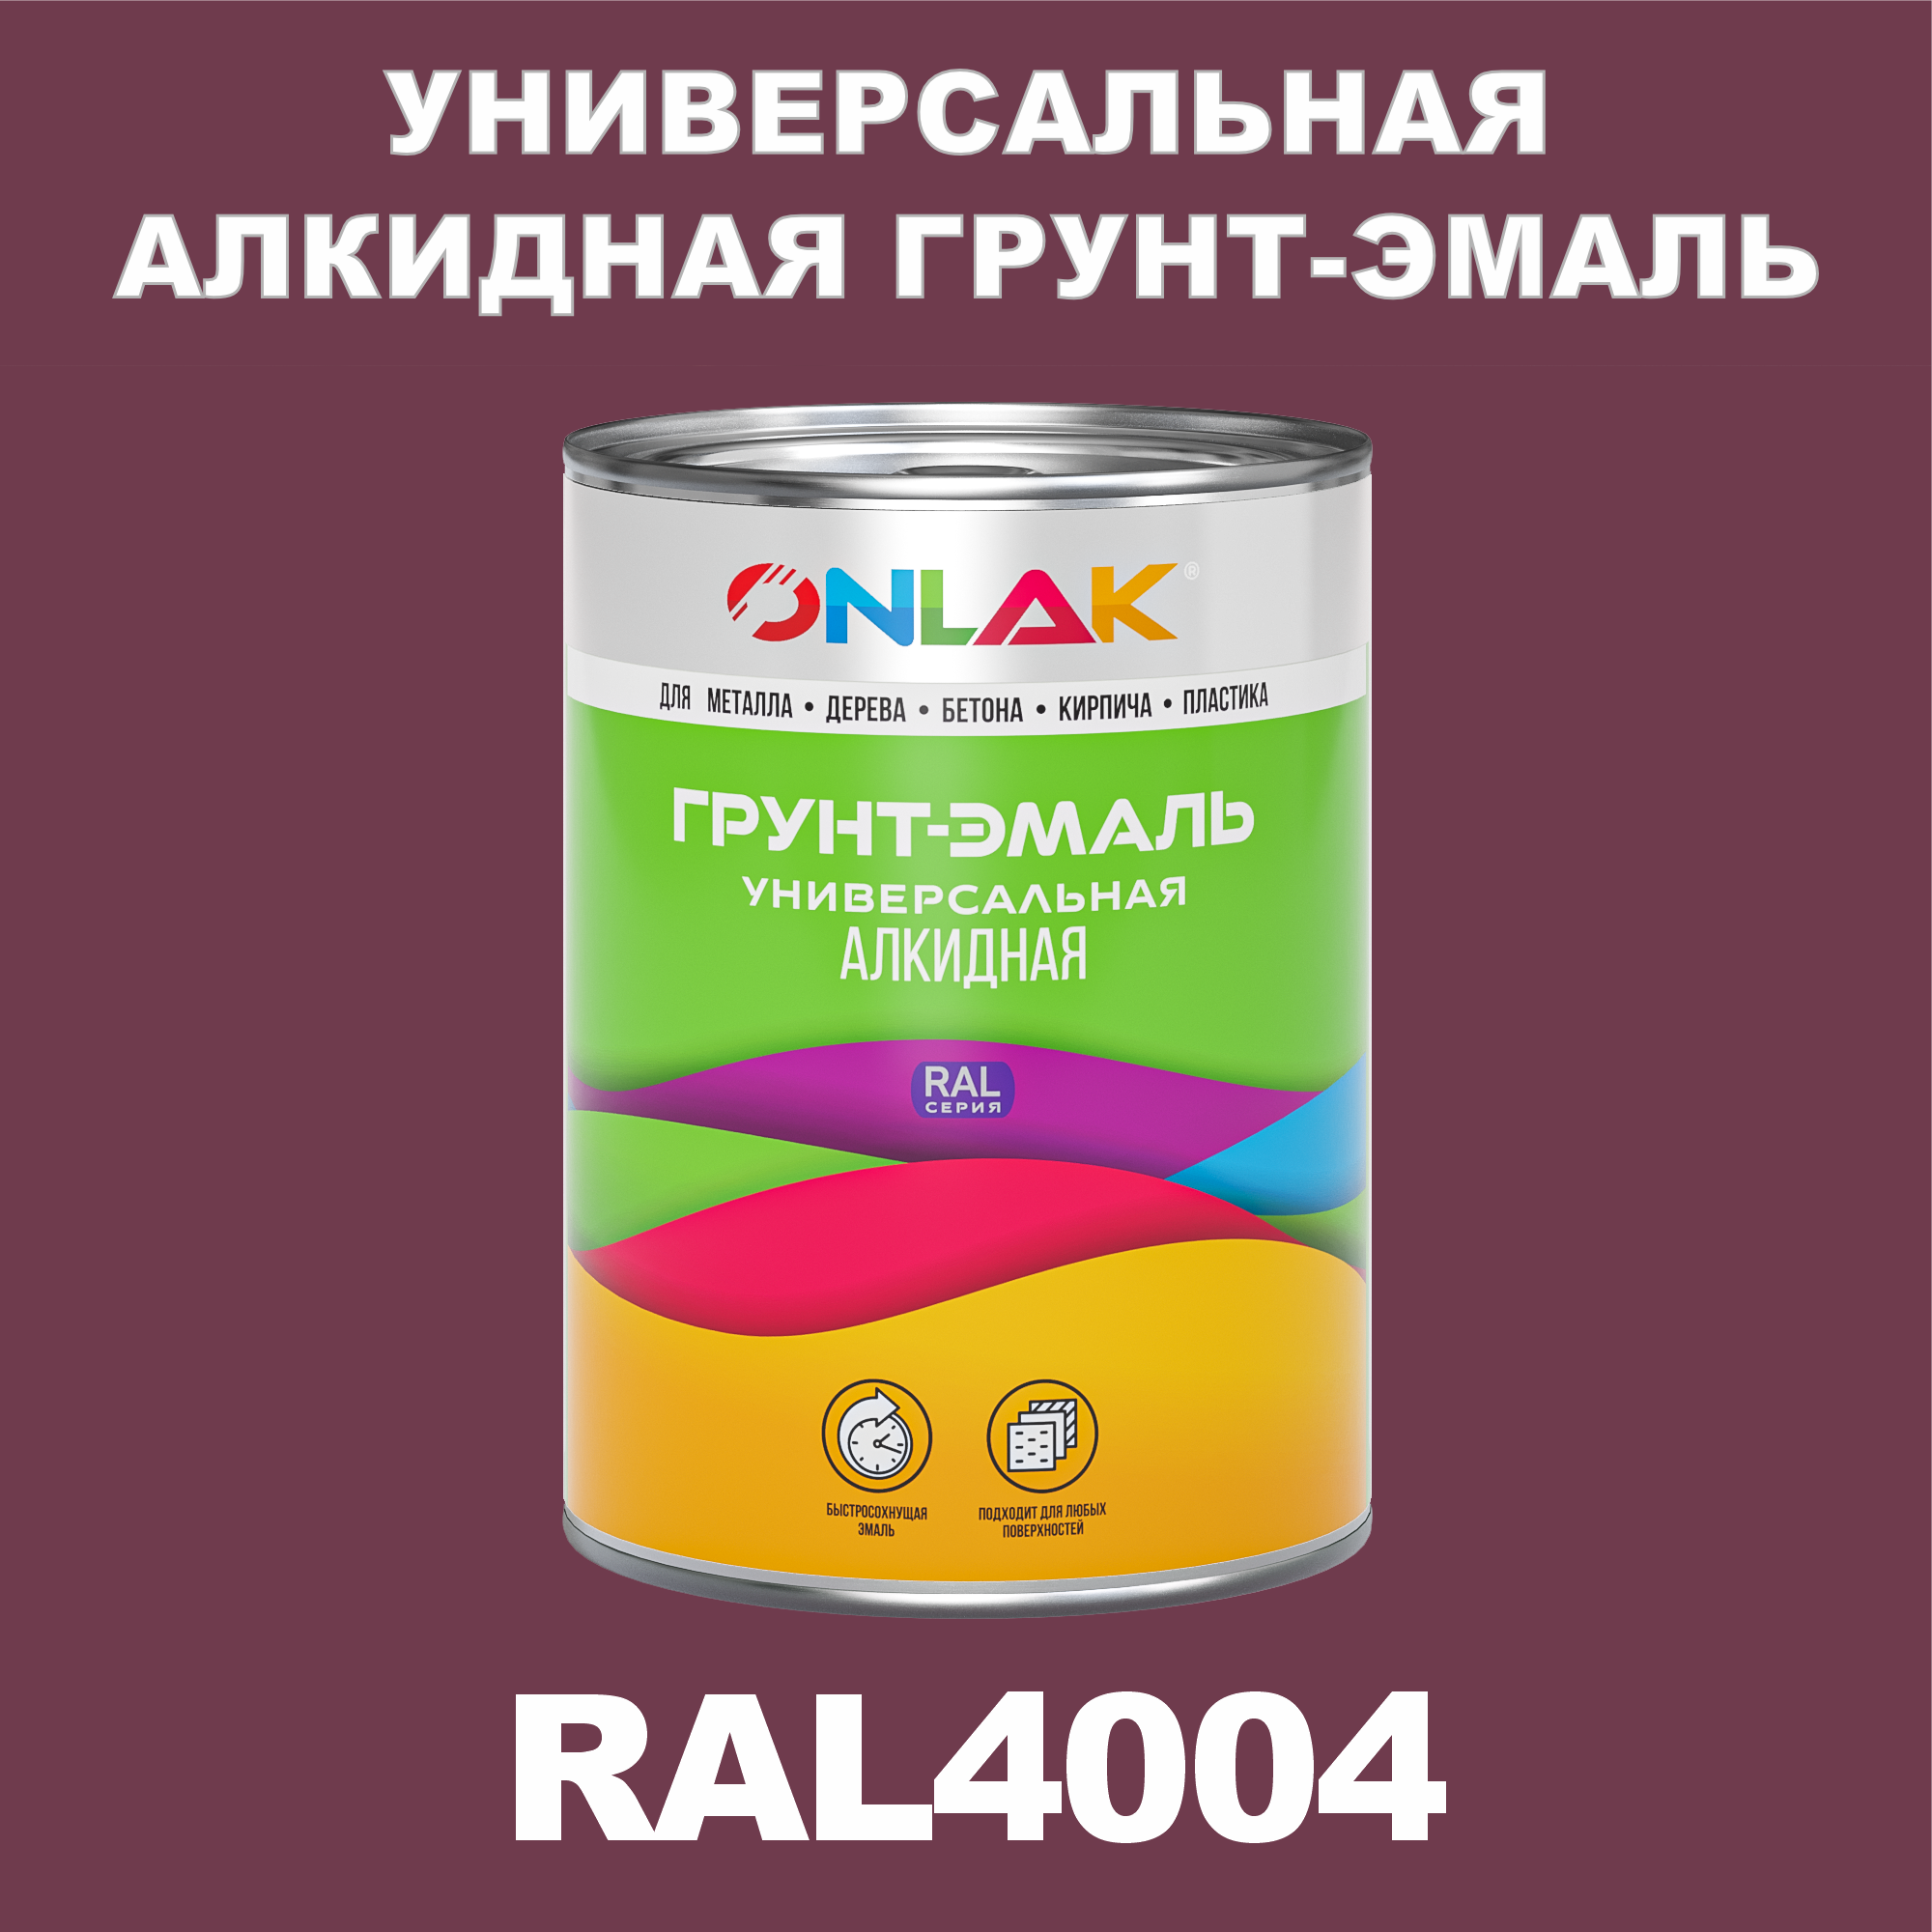 Грунт-эмаль ONLAK 1К RAL4004 антикоррозионная алкидная по металлу по ржавчине 1 кг artuniq color violet ной грунт для аквариума фиолетовый 1 кг